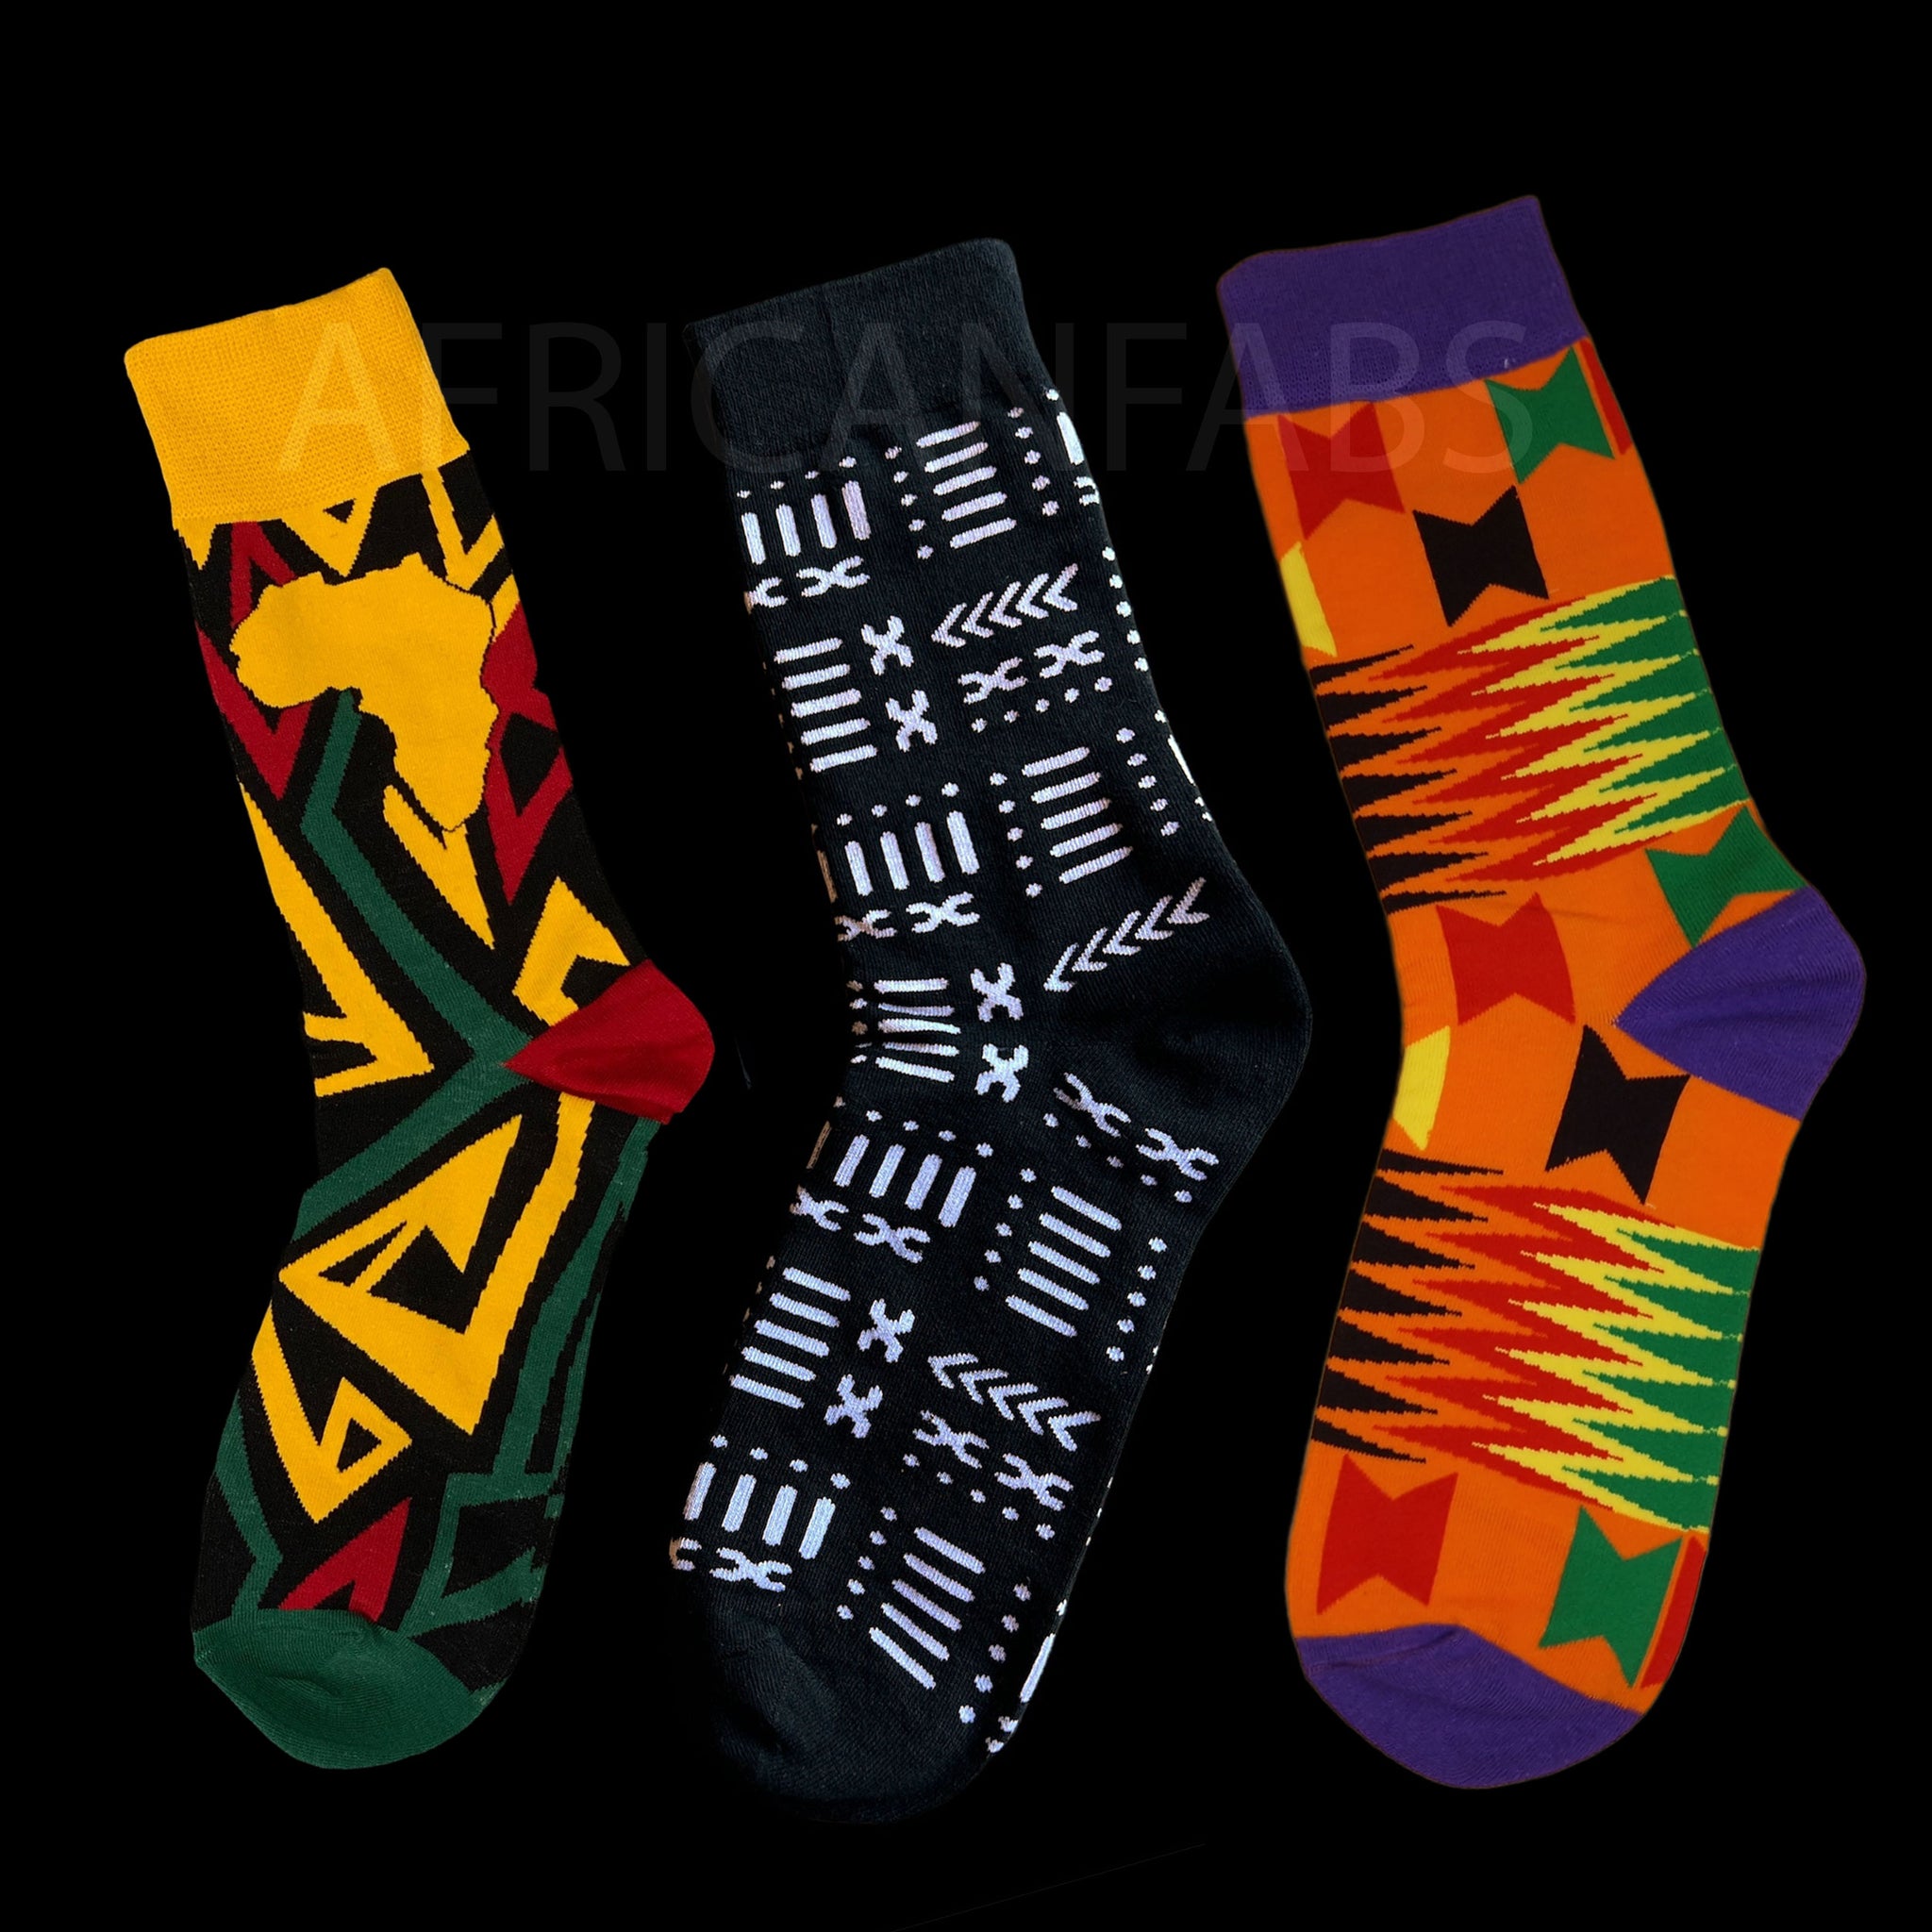 Afrikaanse sokken / Afro sokken / kente / Mud print - Set van 3 paar